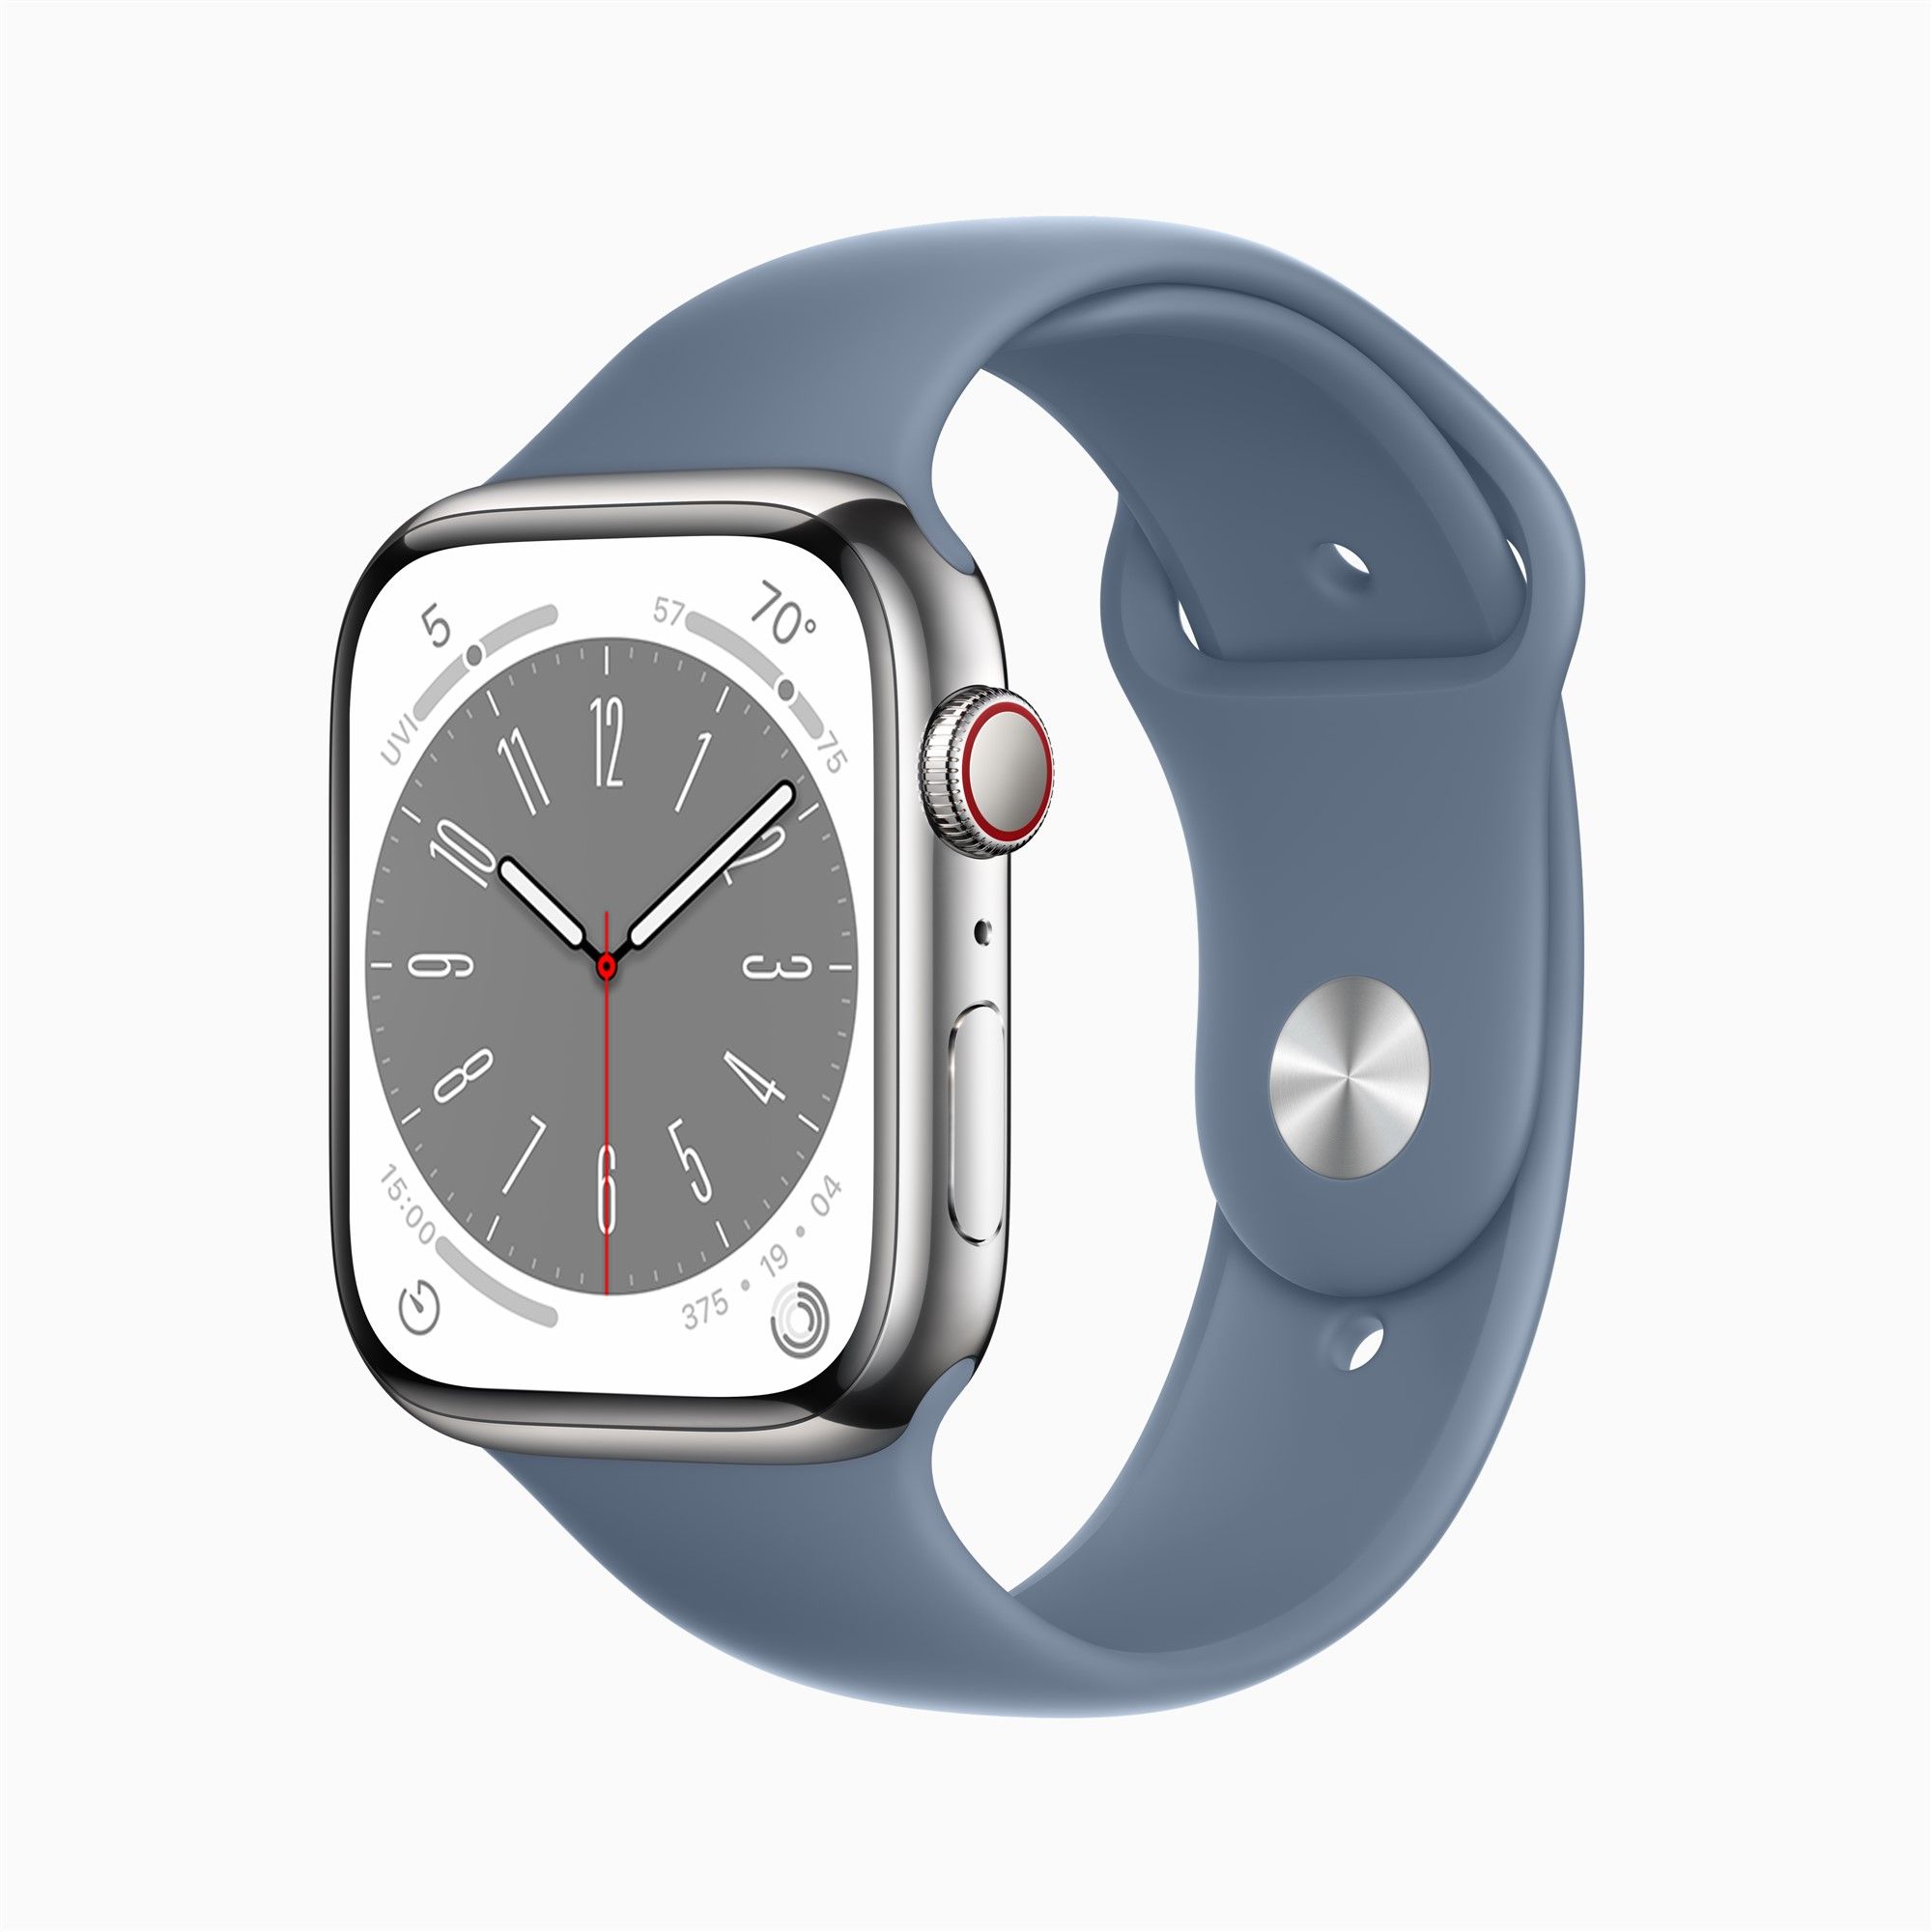 Apple Watch erscheint in Ultra-Version, Pro in 2. Generation Airpods